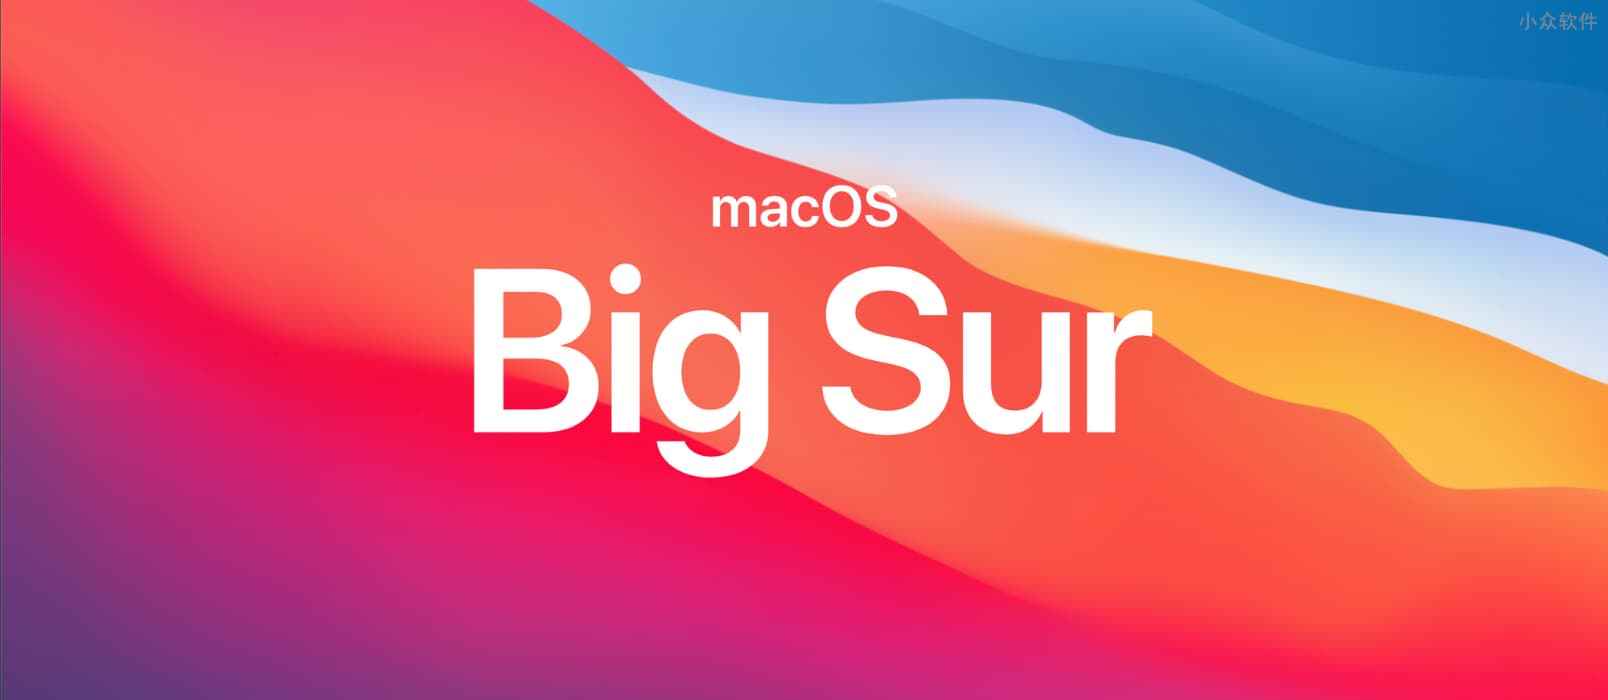 macOS Big Sur 正式版 11.0.1 发布